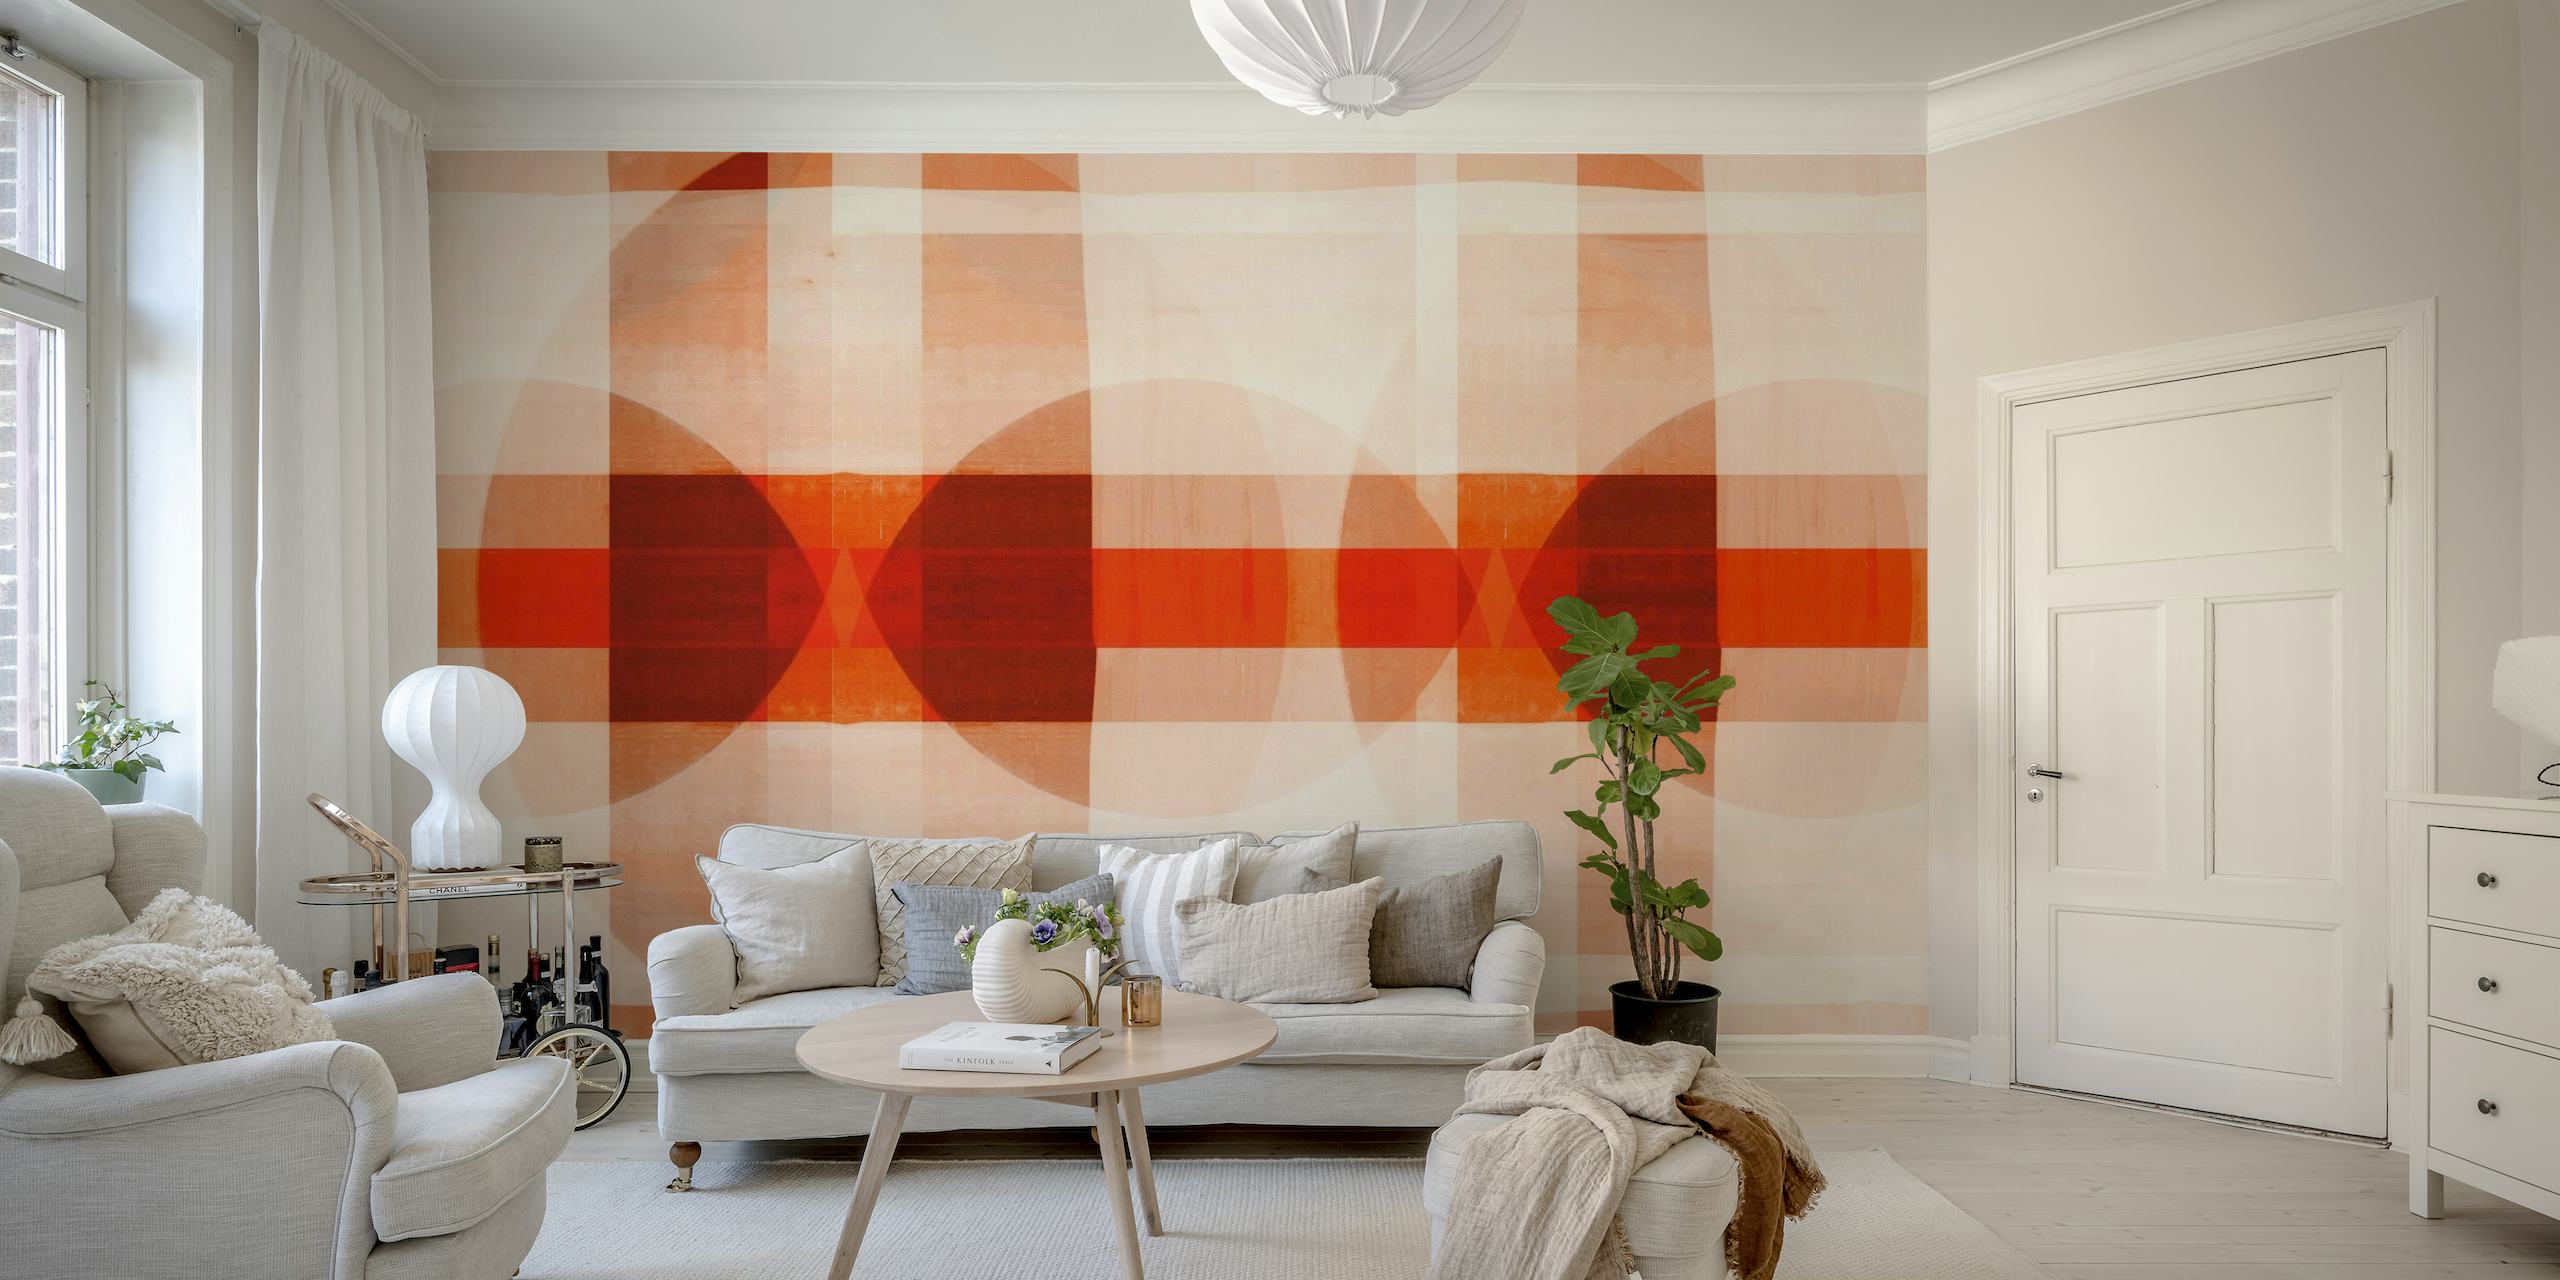 Mozaik zidna slika inspirirana Bauhausom s geometrijskim uzorcima u toplim bojama